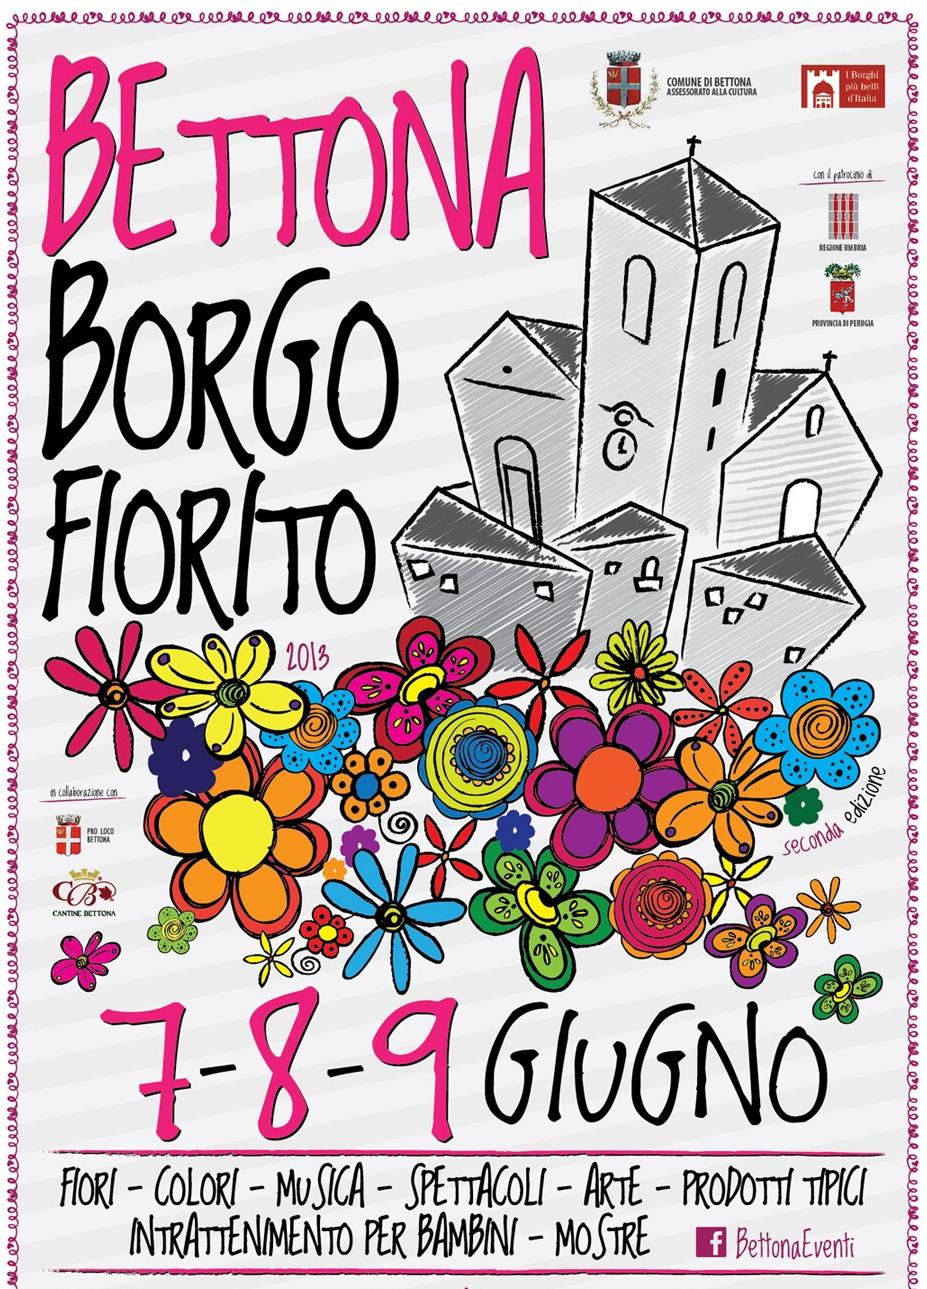 Lunedì 3 giugno conferenza stampa di presentazione della seconda edizione di “Bettona Borgo Fiorito” (7-9 giugno)